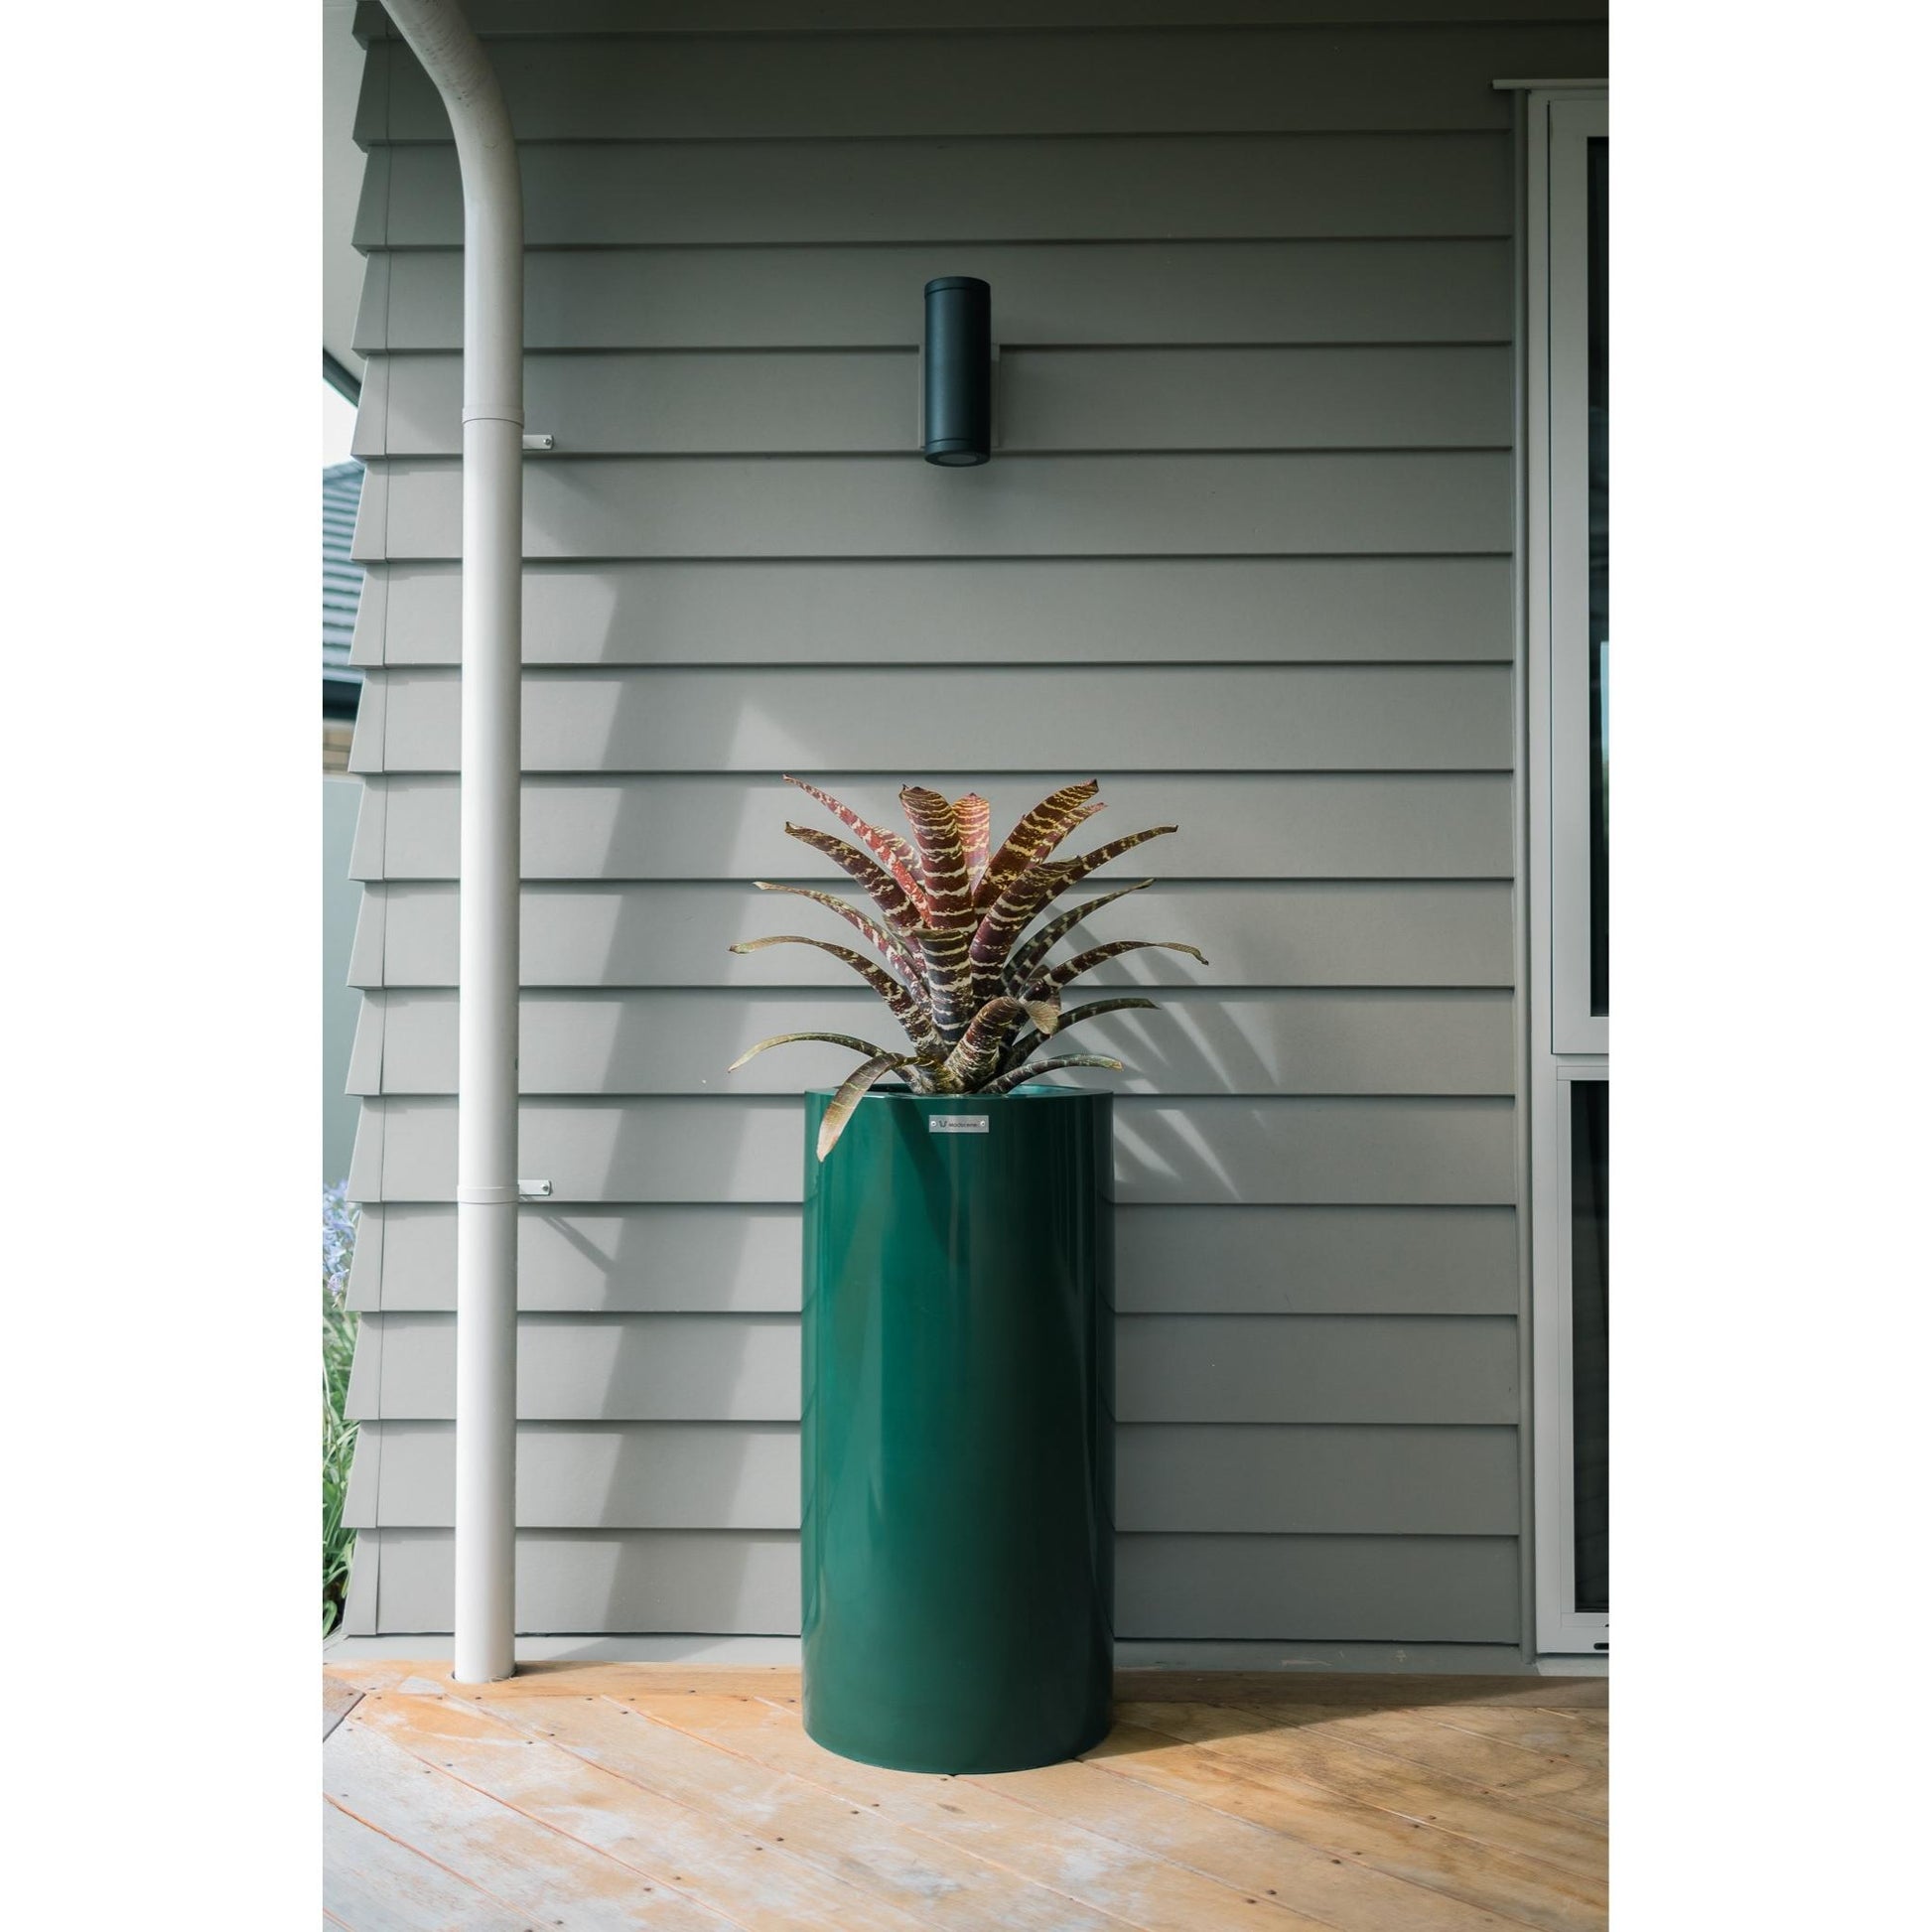 Emerald green planter pot on a modern veranda. NZ made planter pots by Modscene.